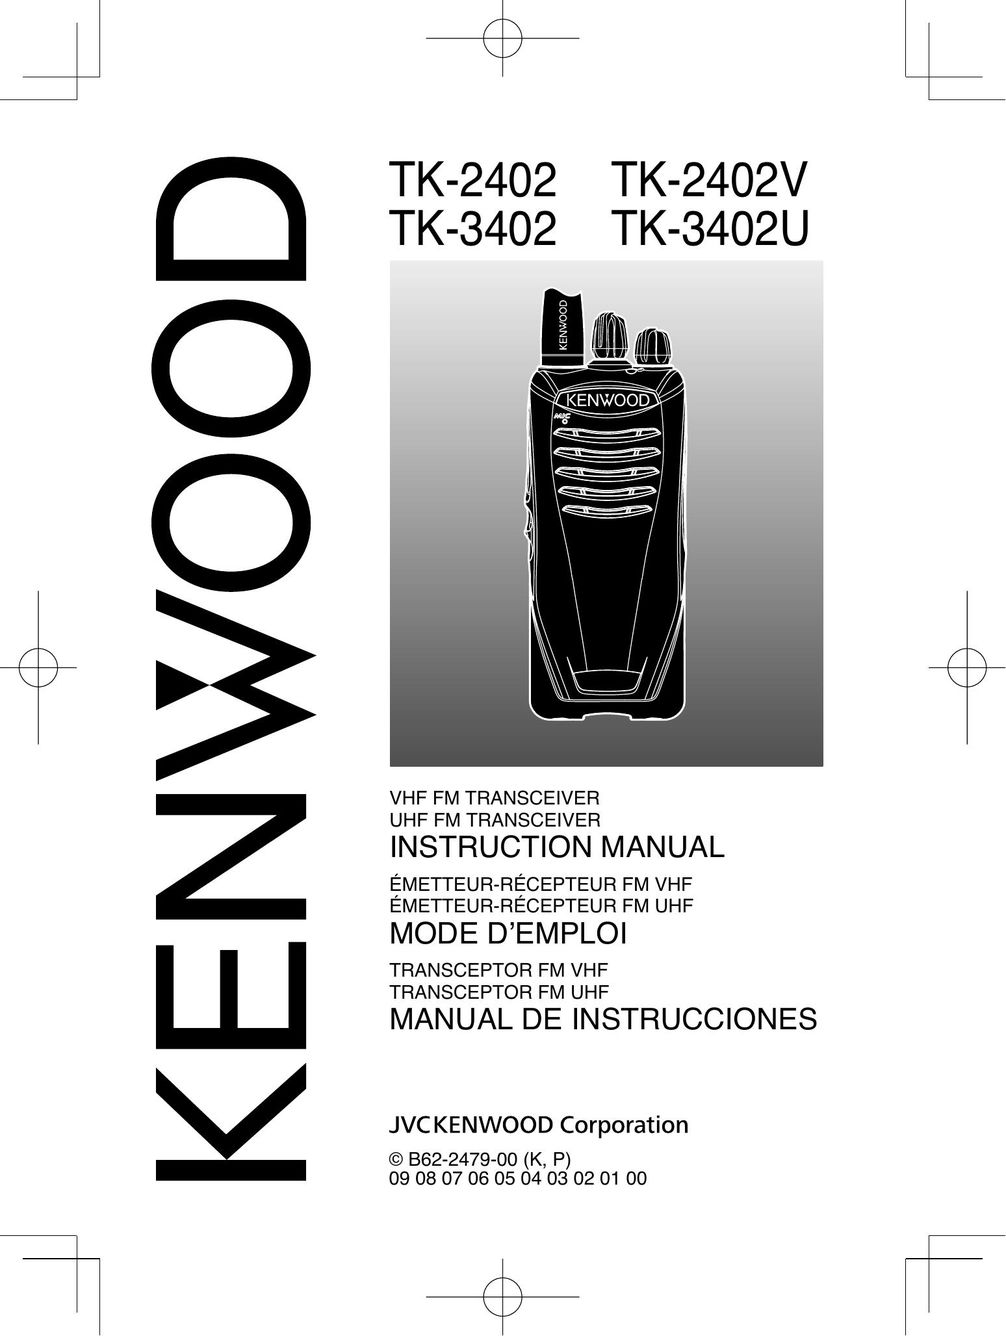 Kenwood TK-2402 Satellite Radio User Manual